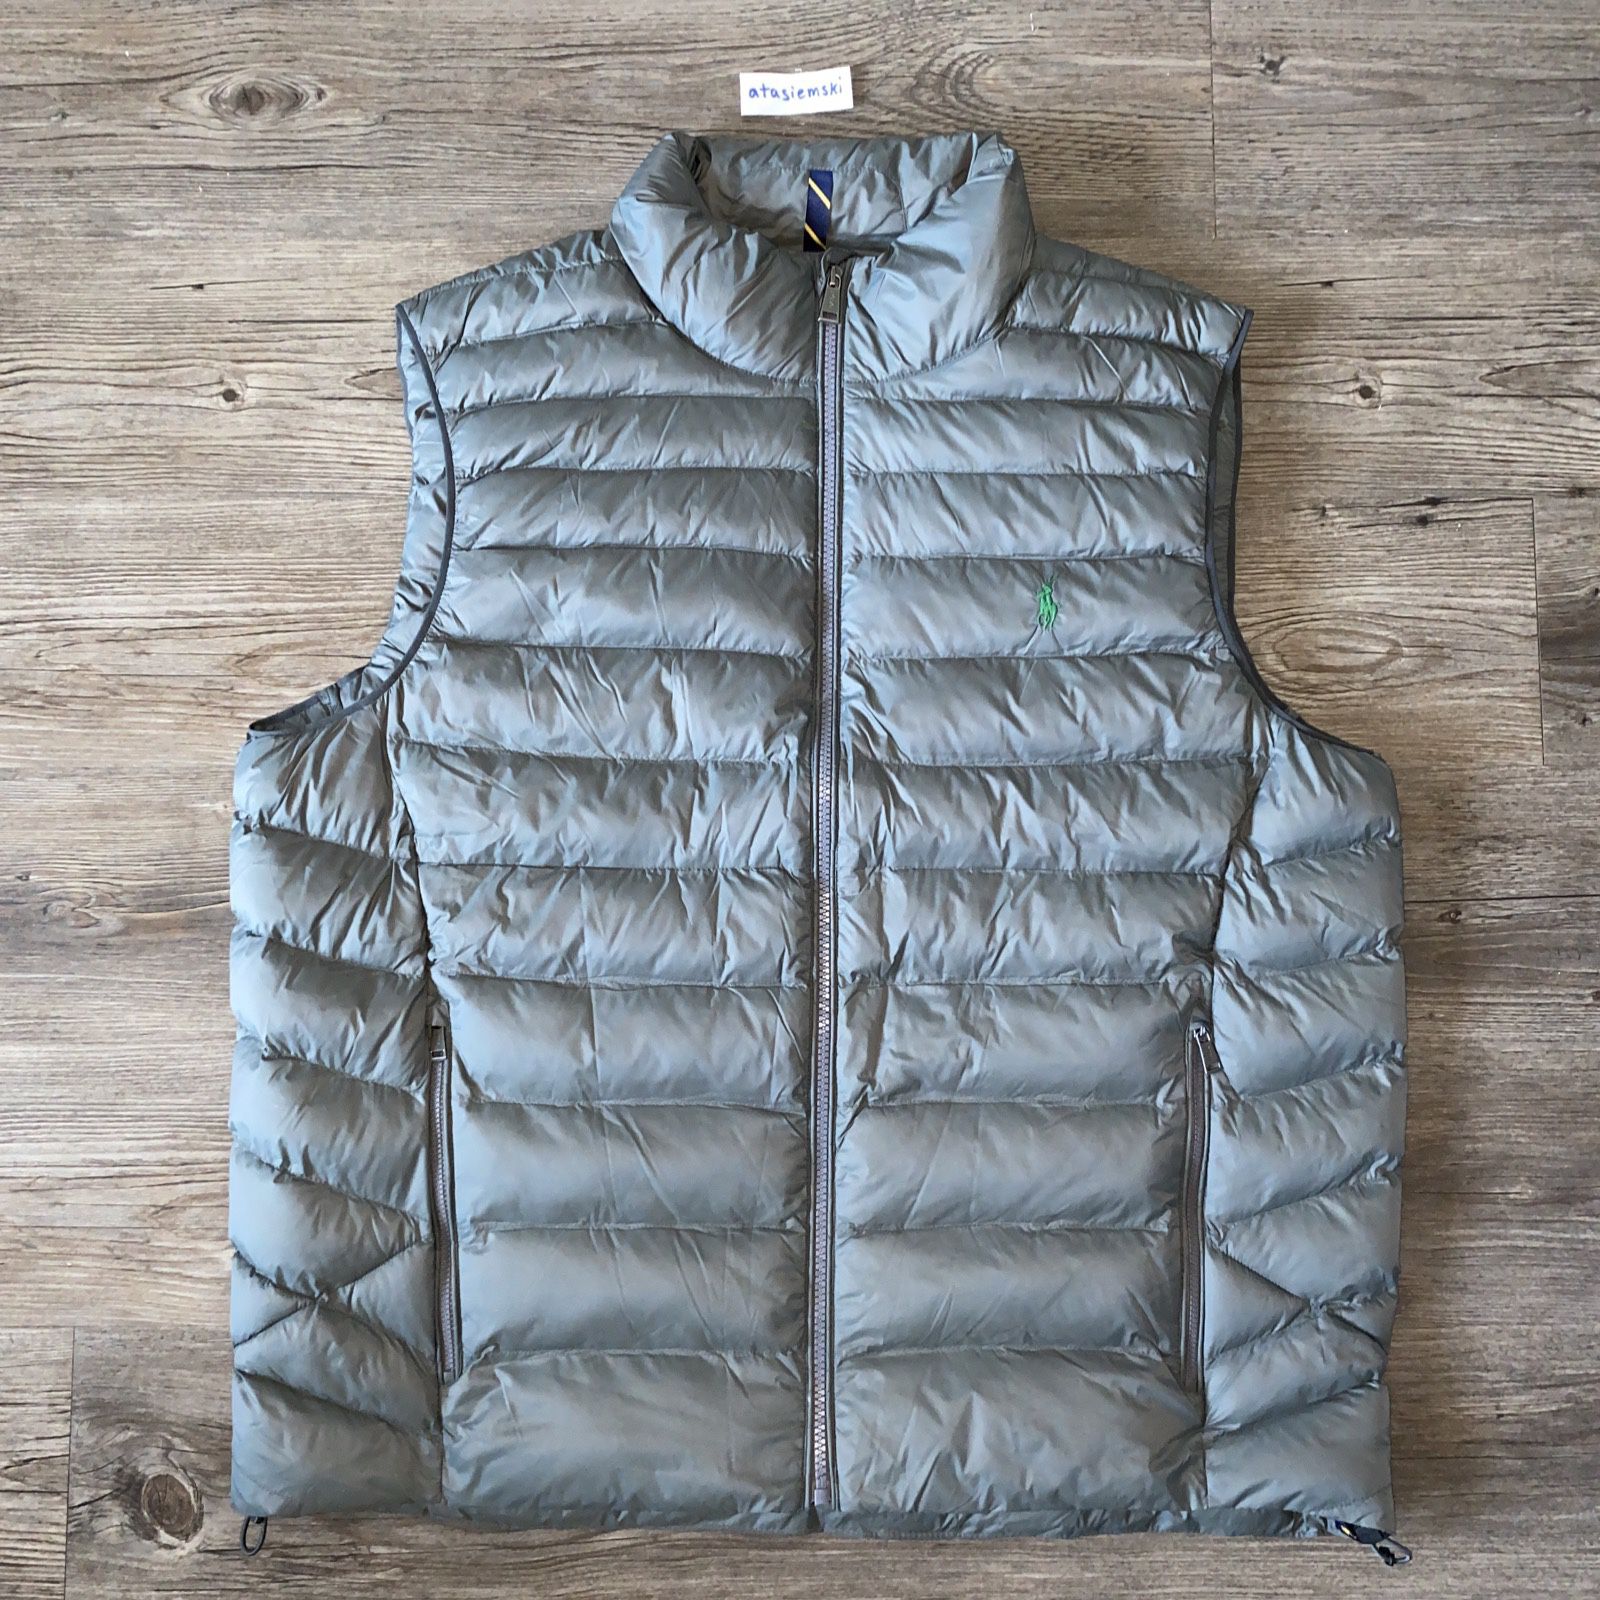 Polo Ralph Lauren Packable Quilted Puffer Jacket Vest Lightweight Men’s XL & XXL Grey